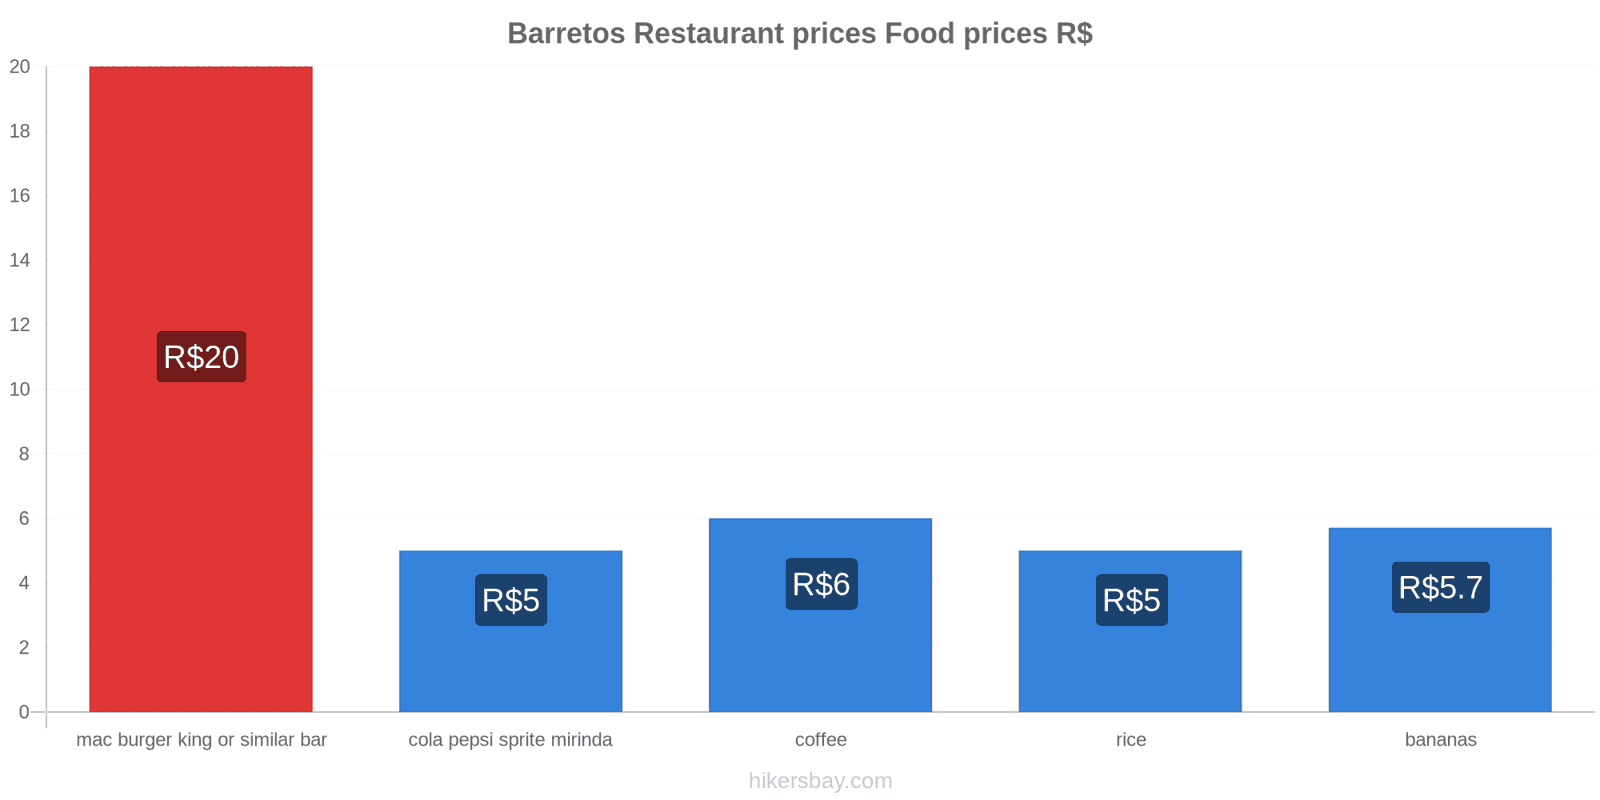 Barretos price changes hikersbay.com